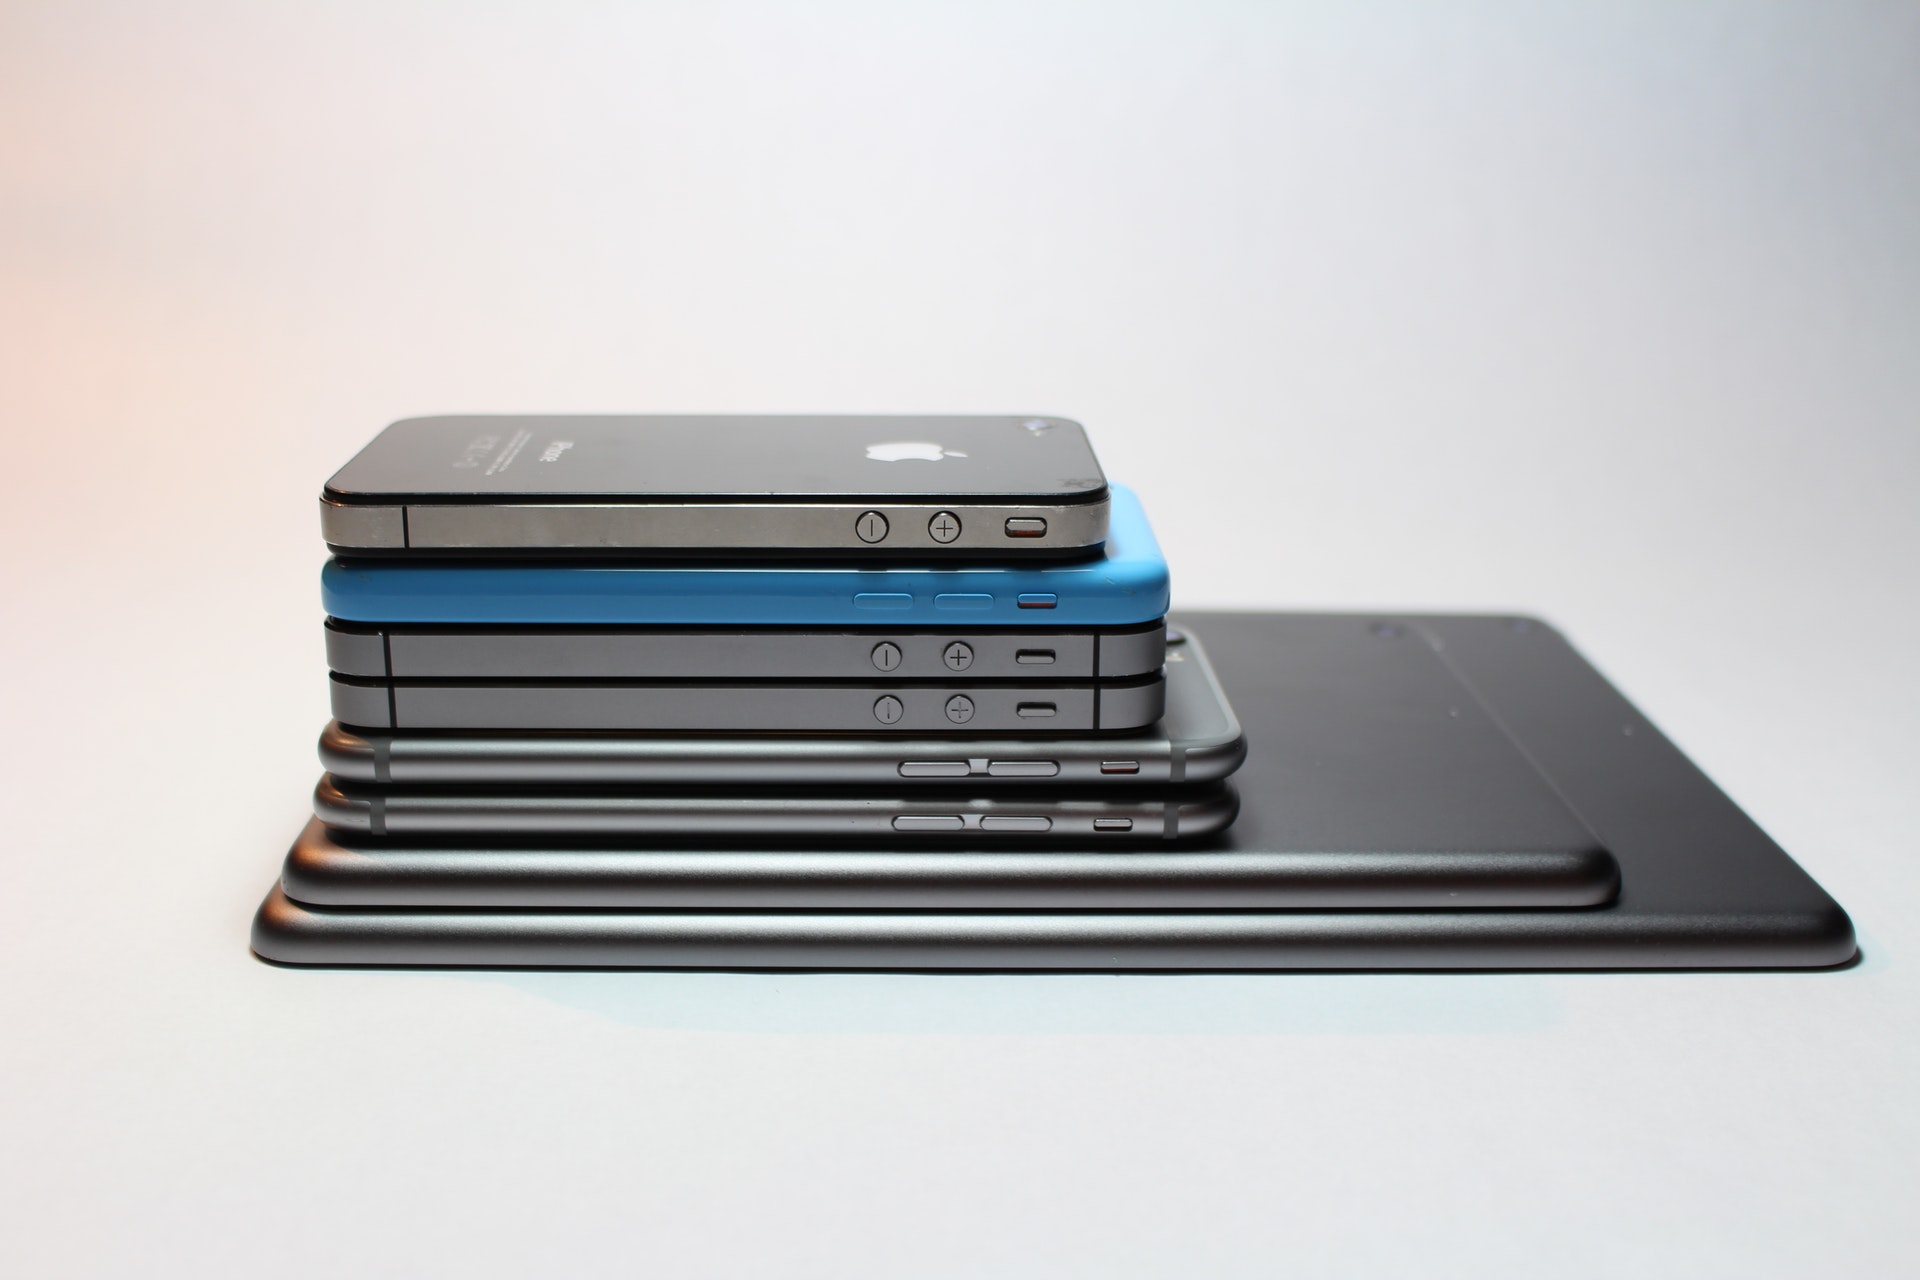 歴代iphoneの画面サイズ インチ数一覧 Iphone過去モデルのケース